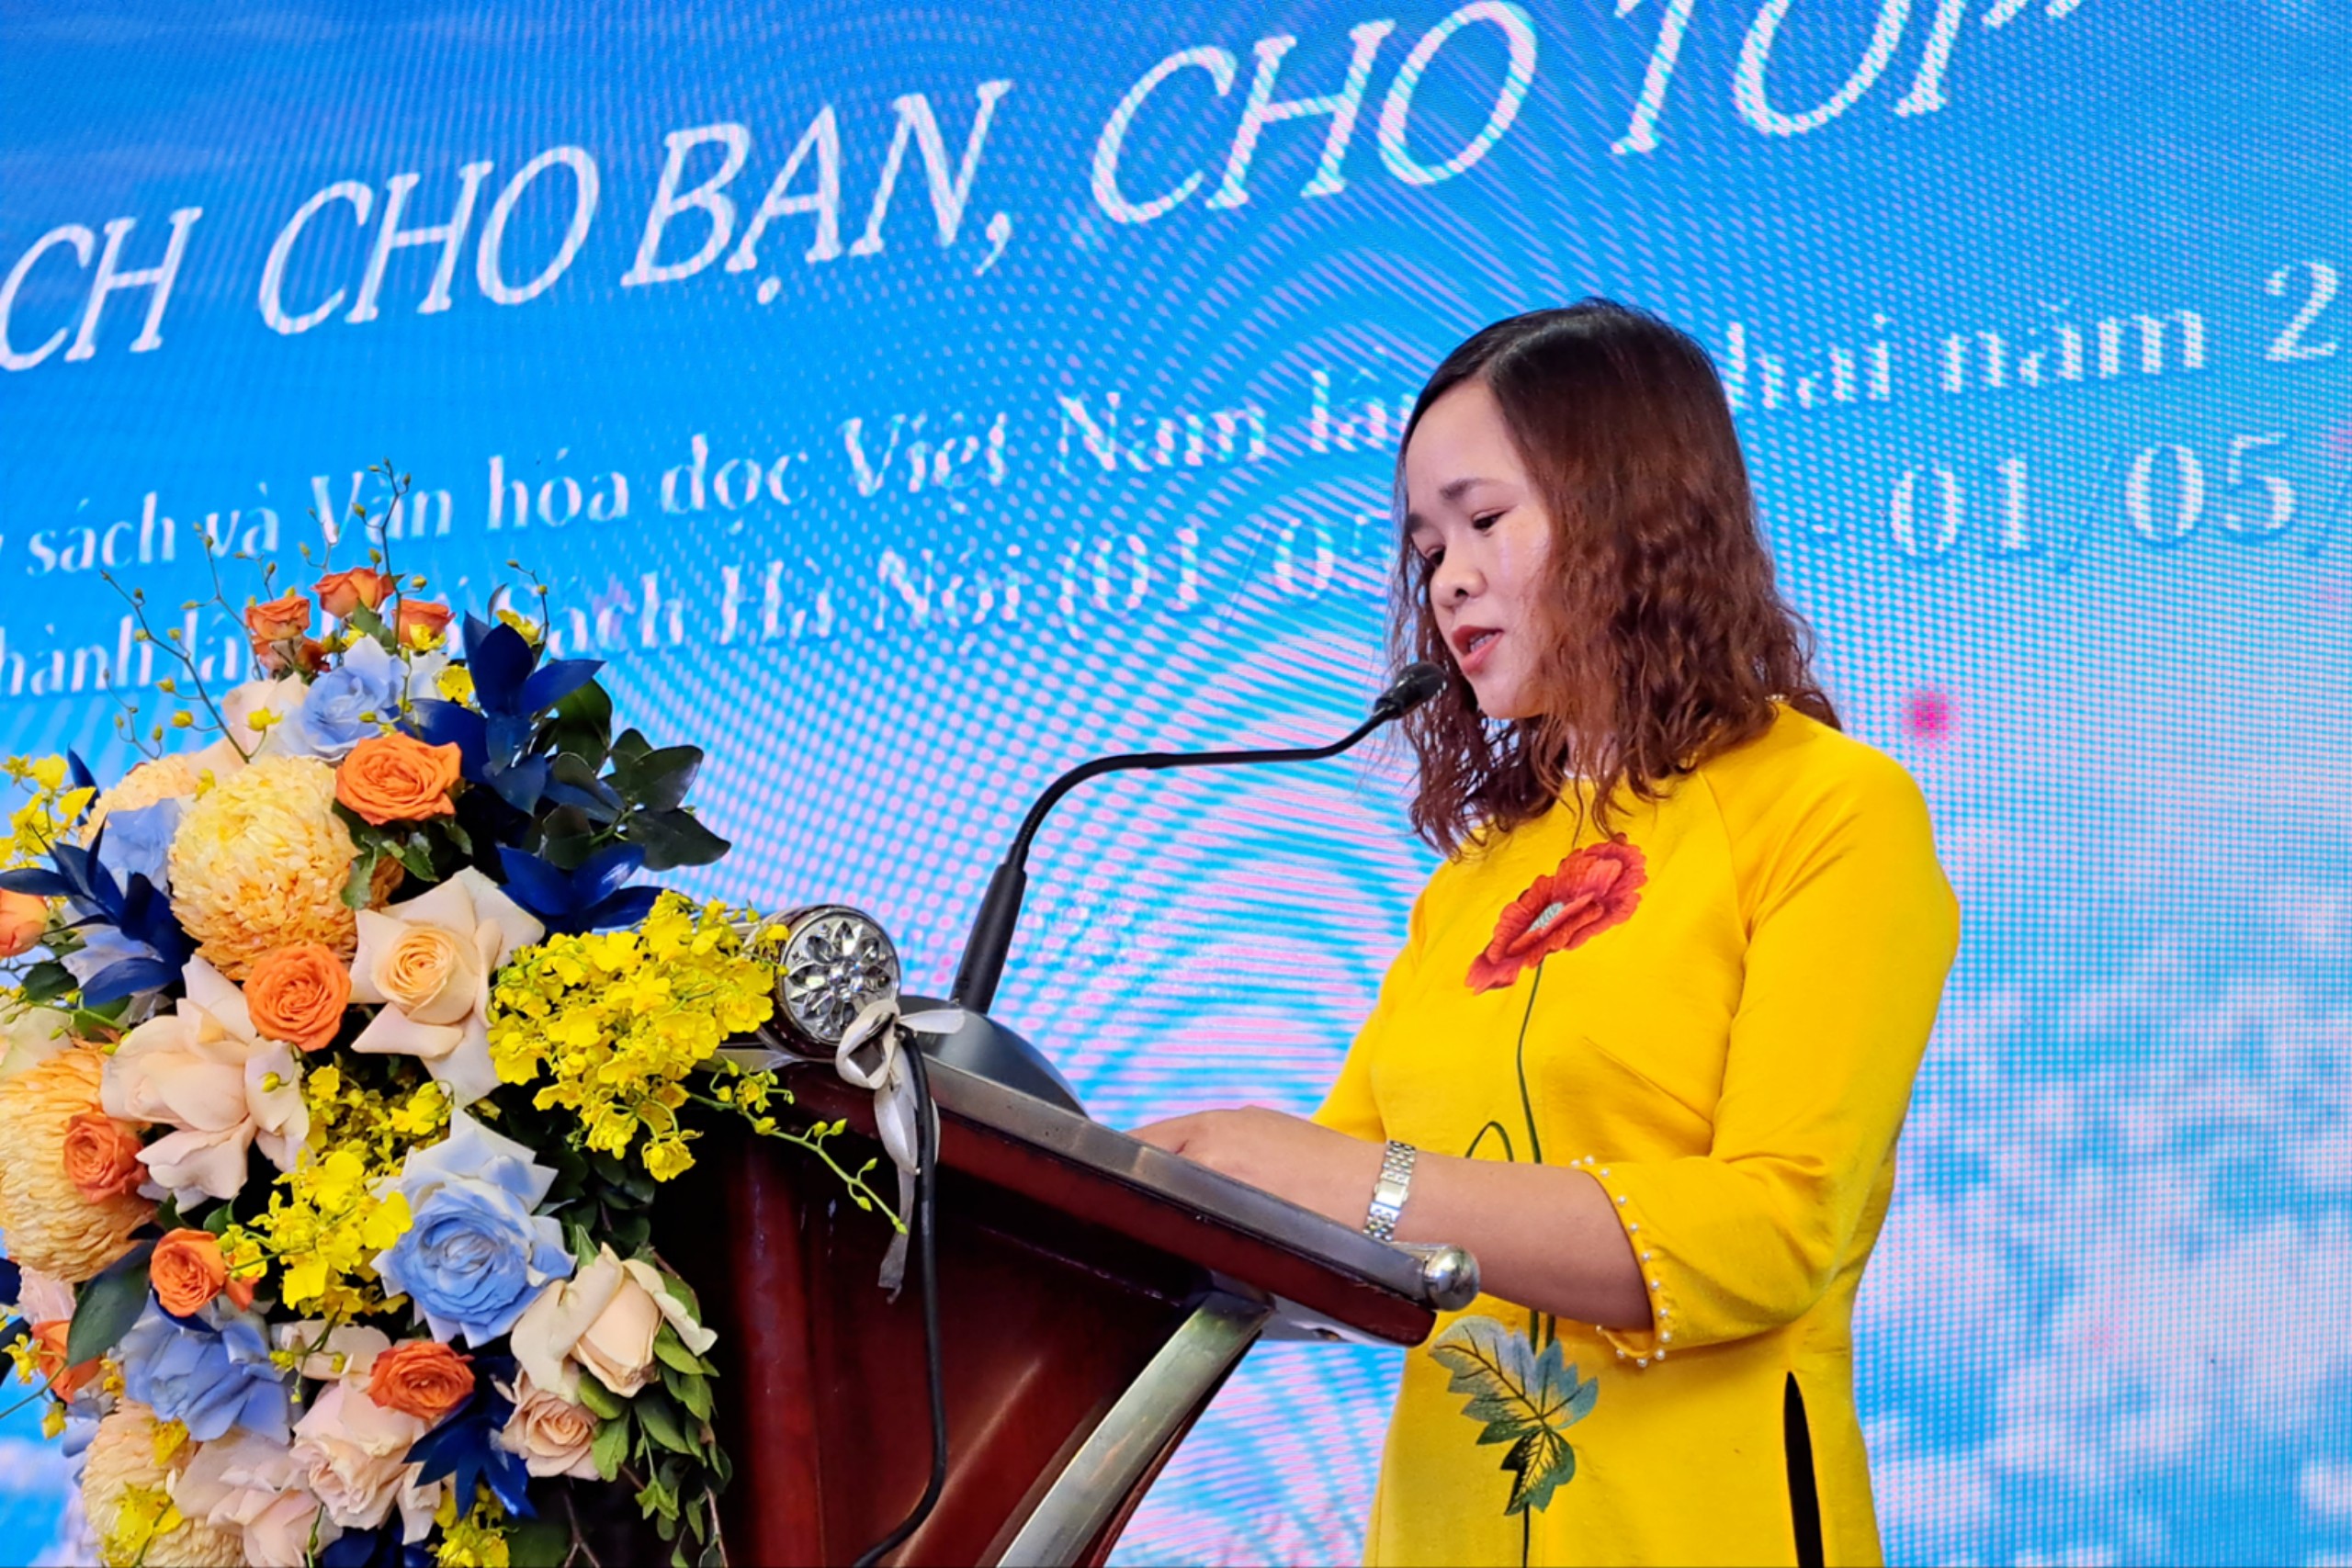 Tưng bừng các hoạt động chào mừng Ngày Sách và Văn hóa đọc Việt Nam tại Phố sách Hà Nội - 5